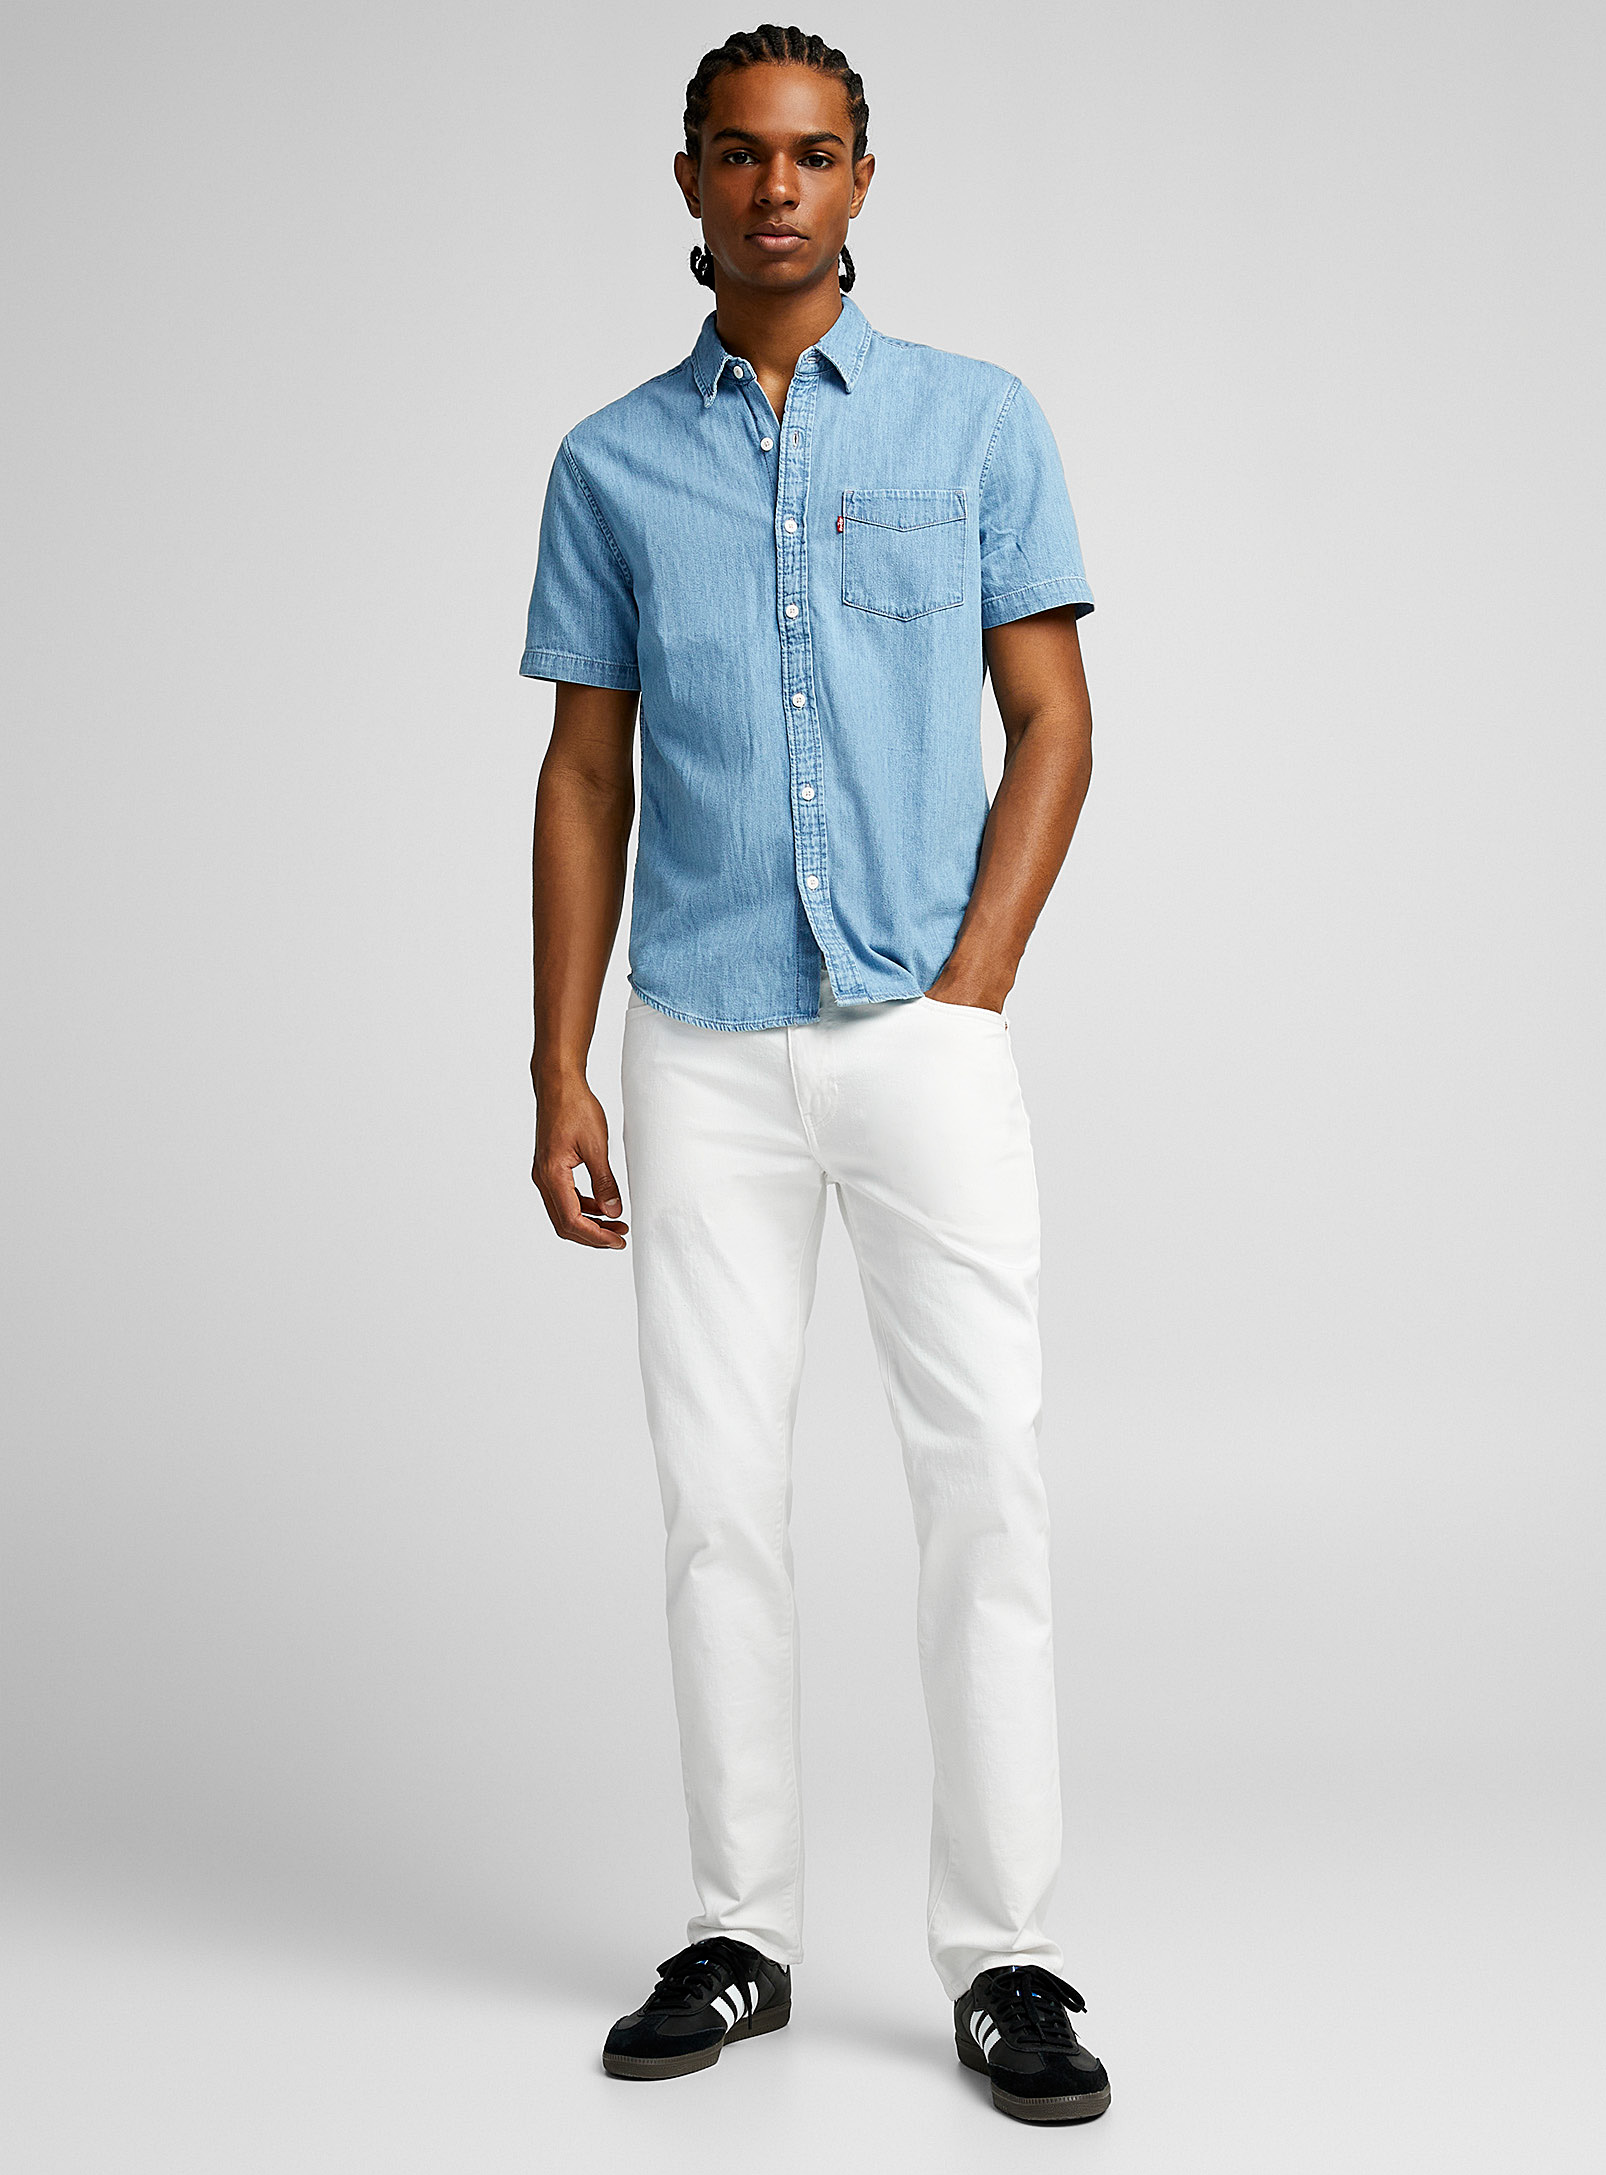 Levi's - Le jean extensible blanc pur Coupe étroite